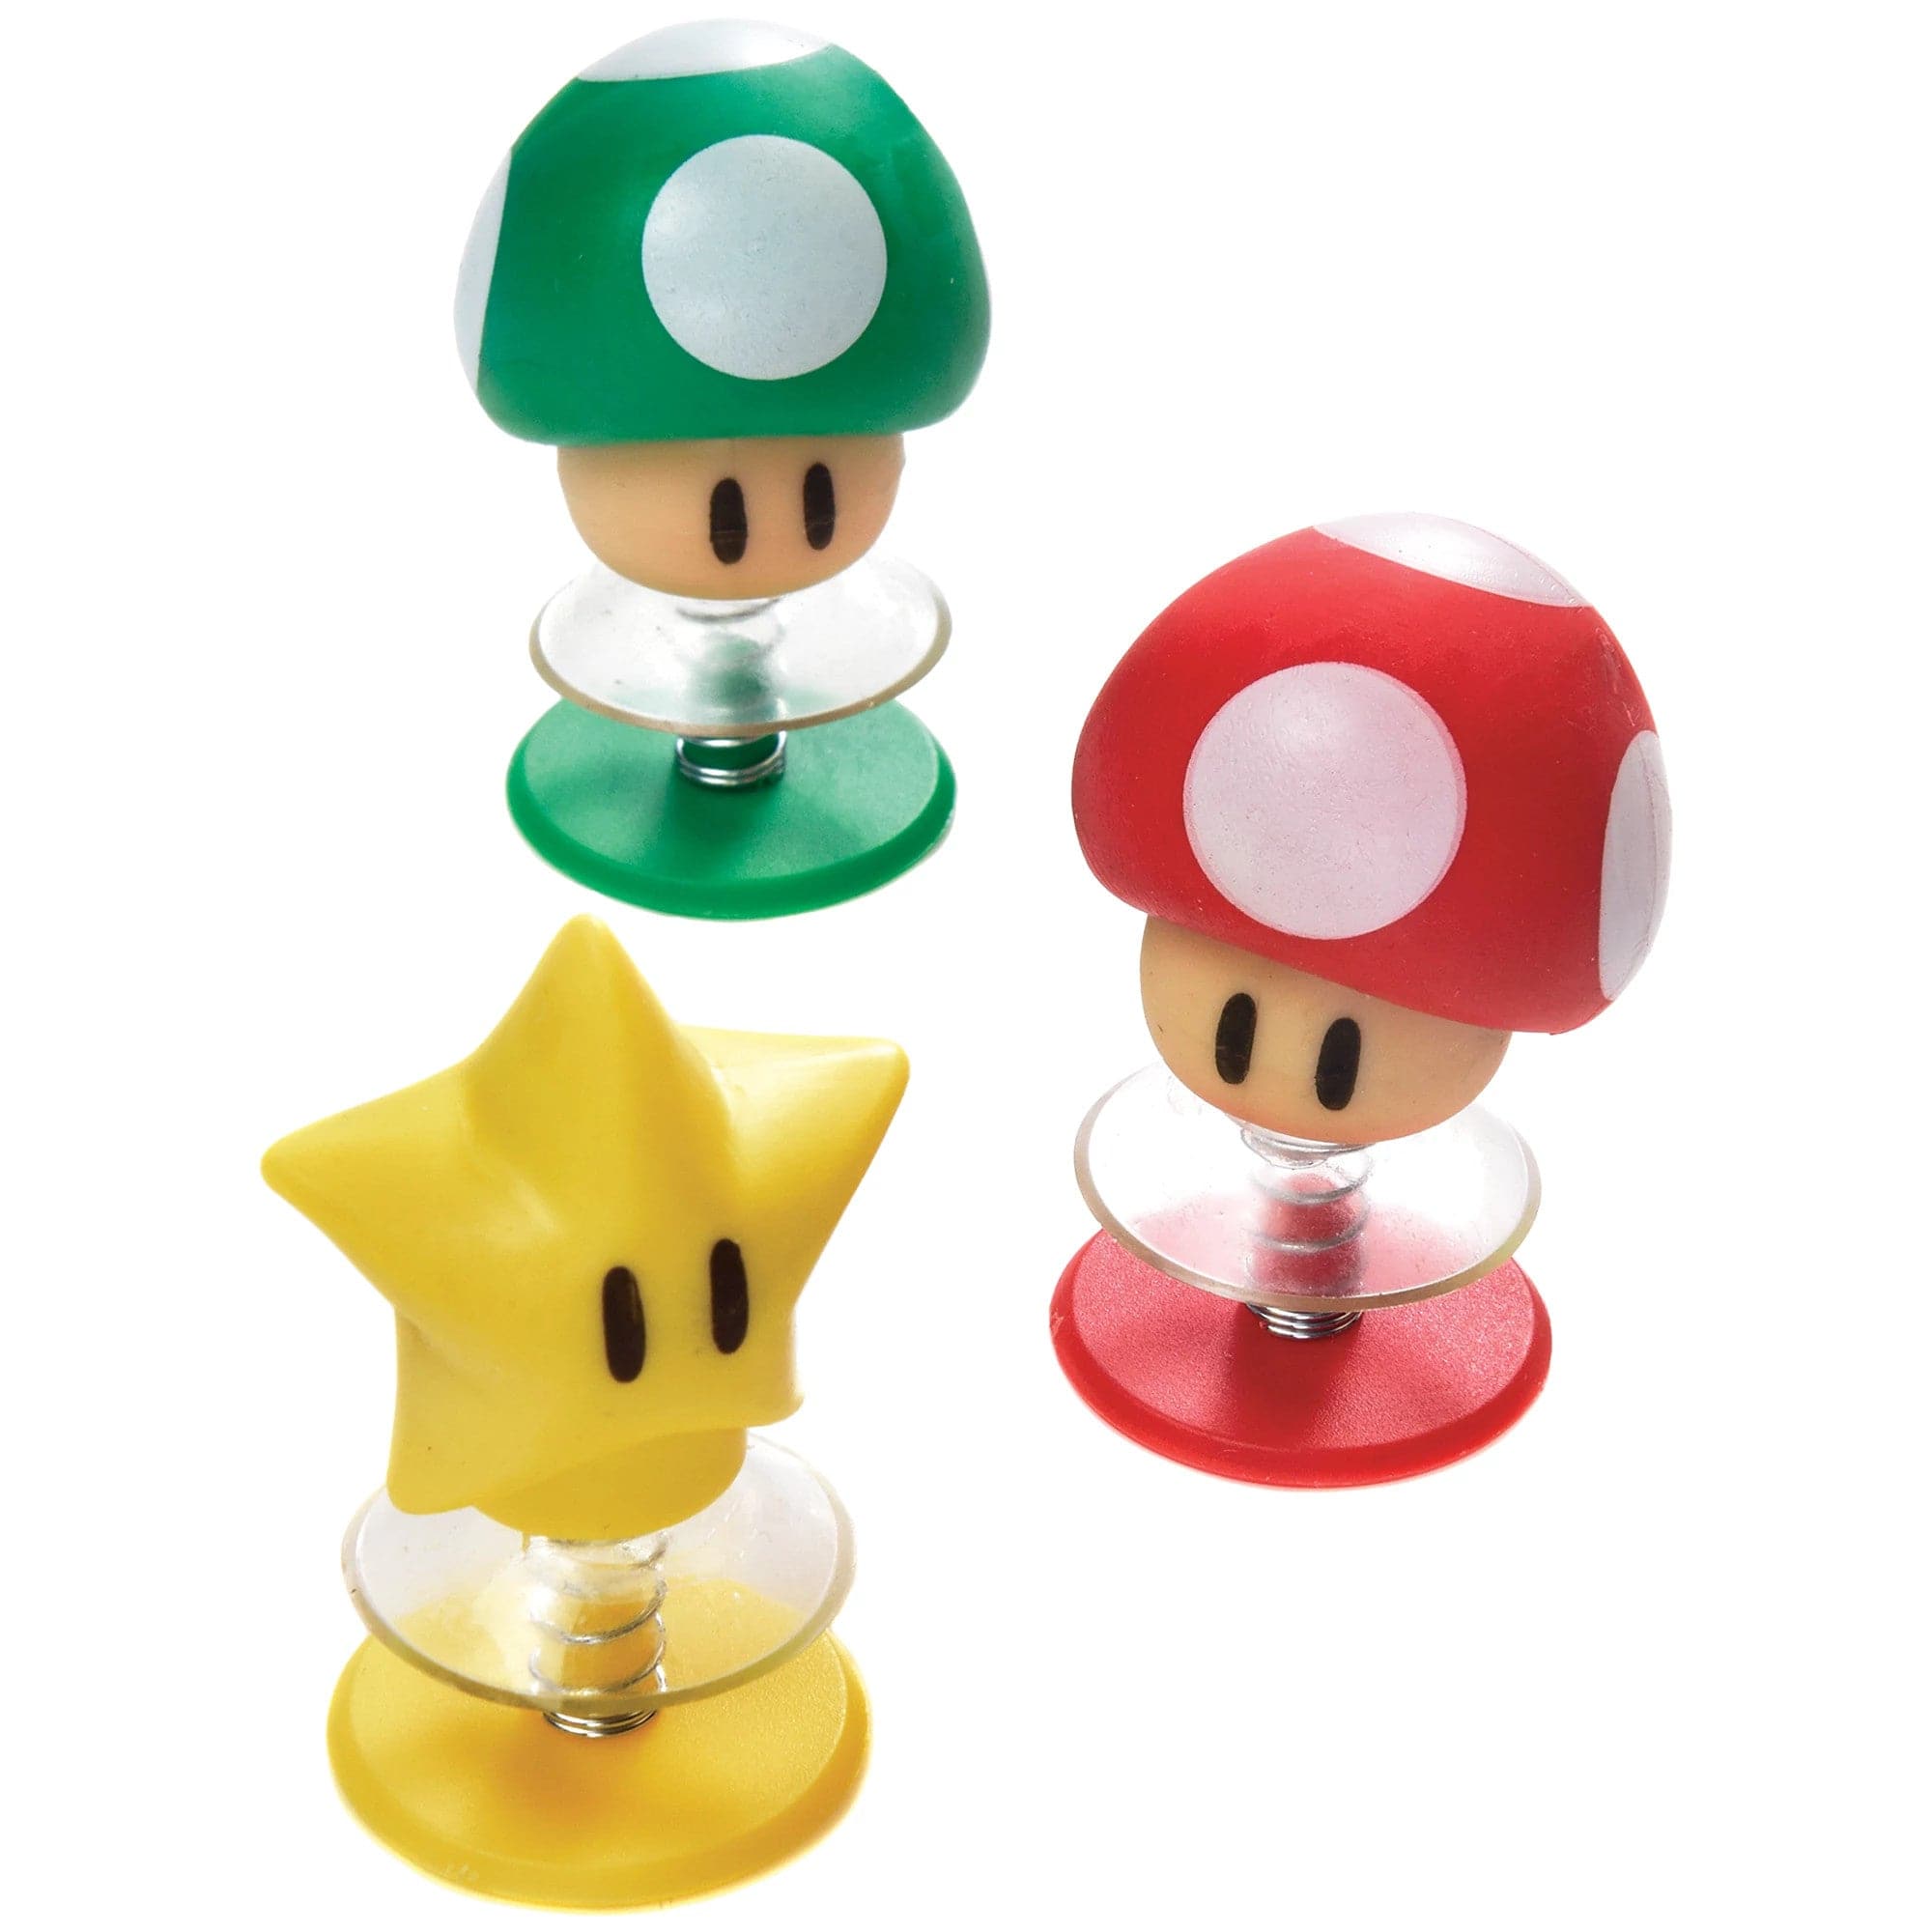 Super Mario Pop Up Toys